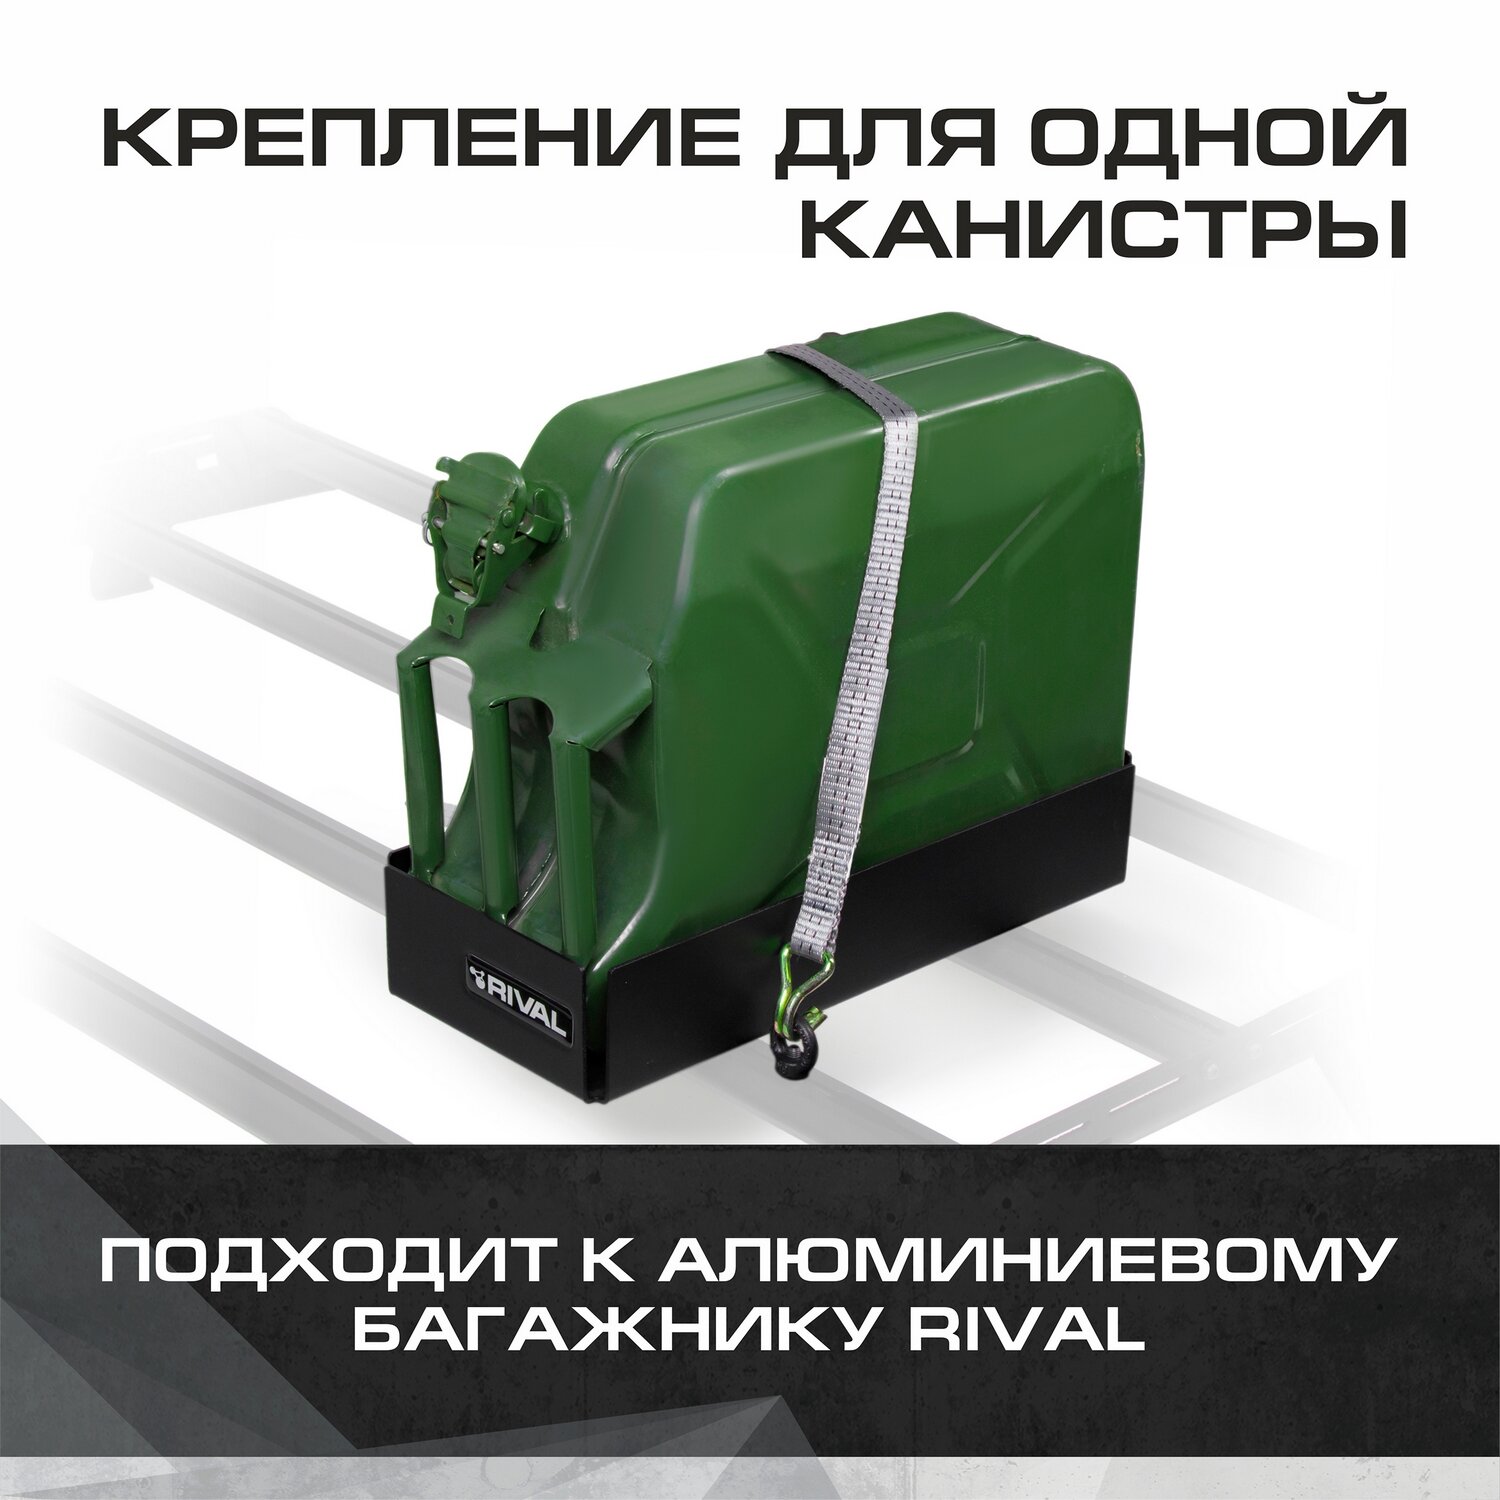 Крепление одной канистры для багажников Rival, алюминий, с крепежом, 2MD.0017.2